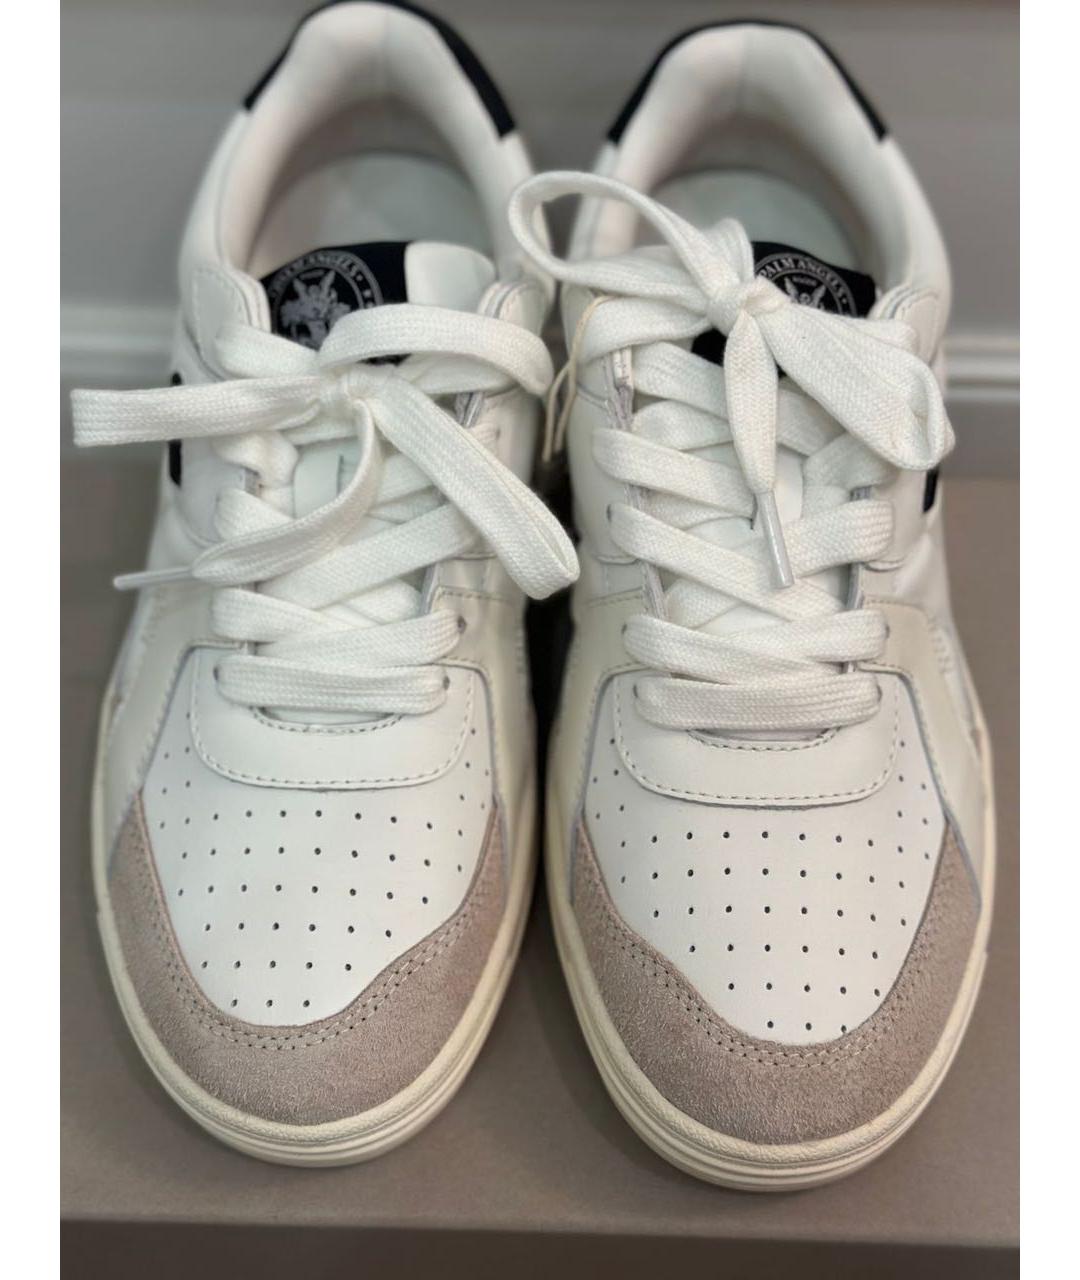 PALM ANGELS Белые низкие кроссовки / кеды, фото 2